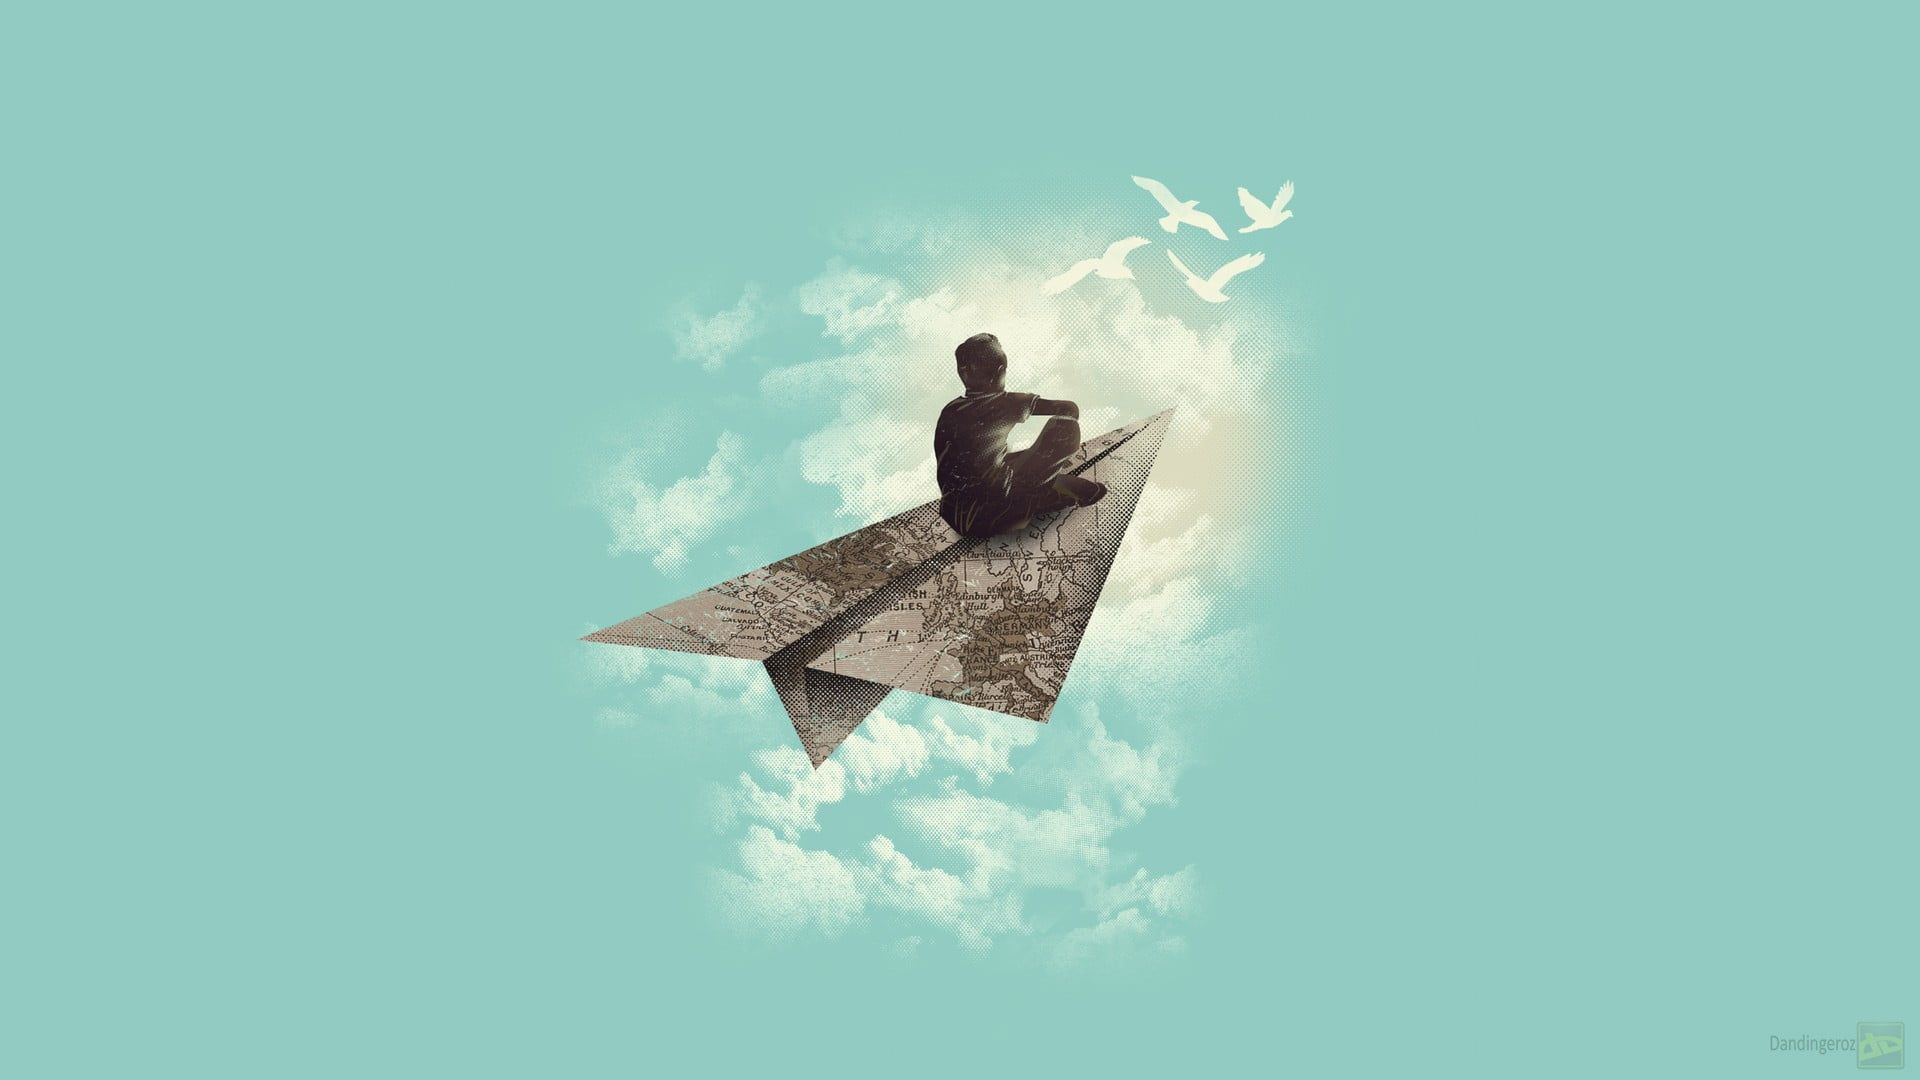 دانلود پروفایل درخشان پسر روی هواپیمای کاغذی در آسمان آبی